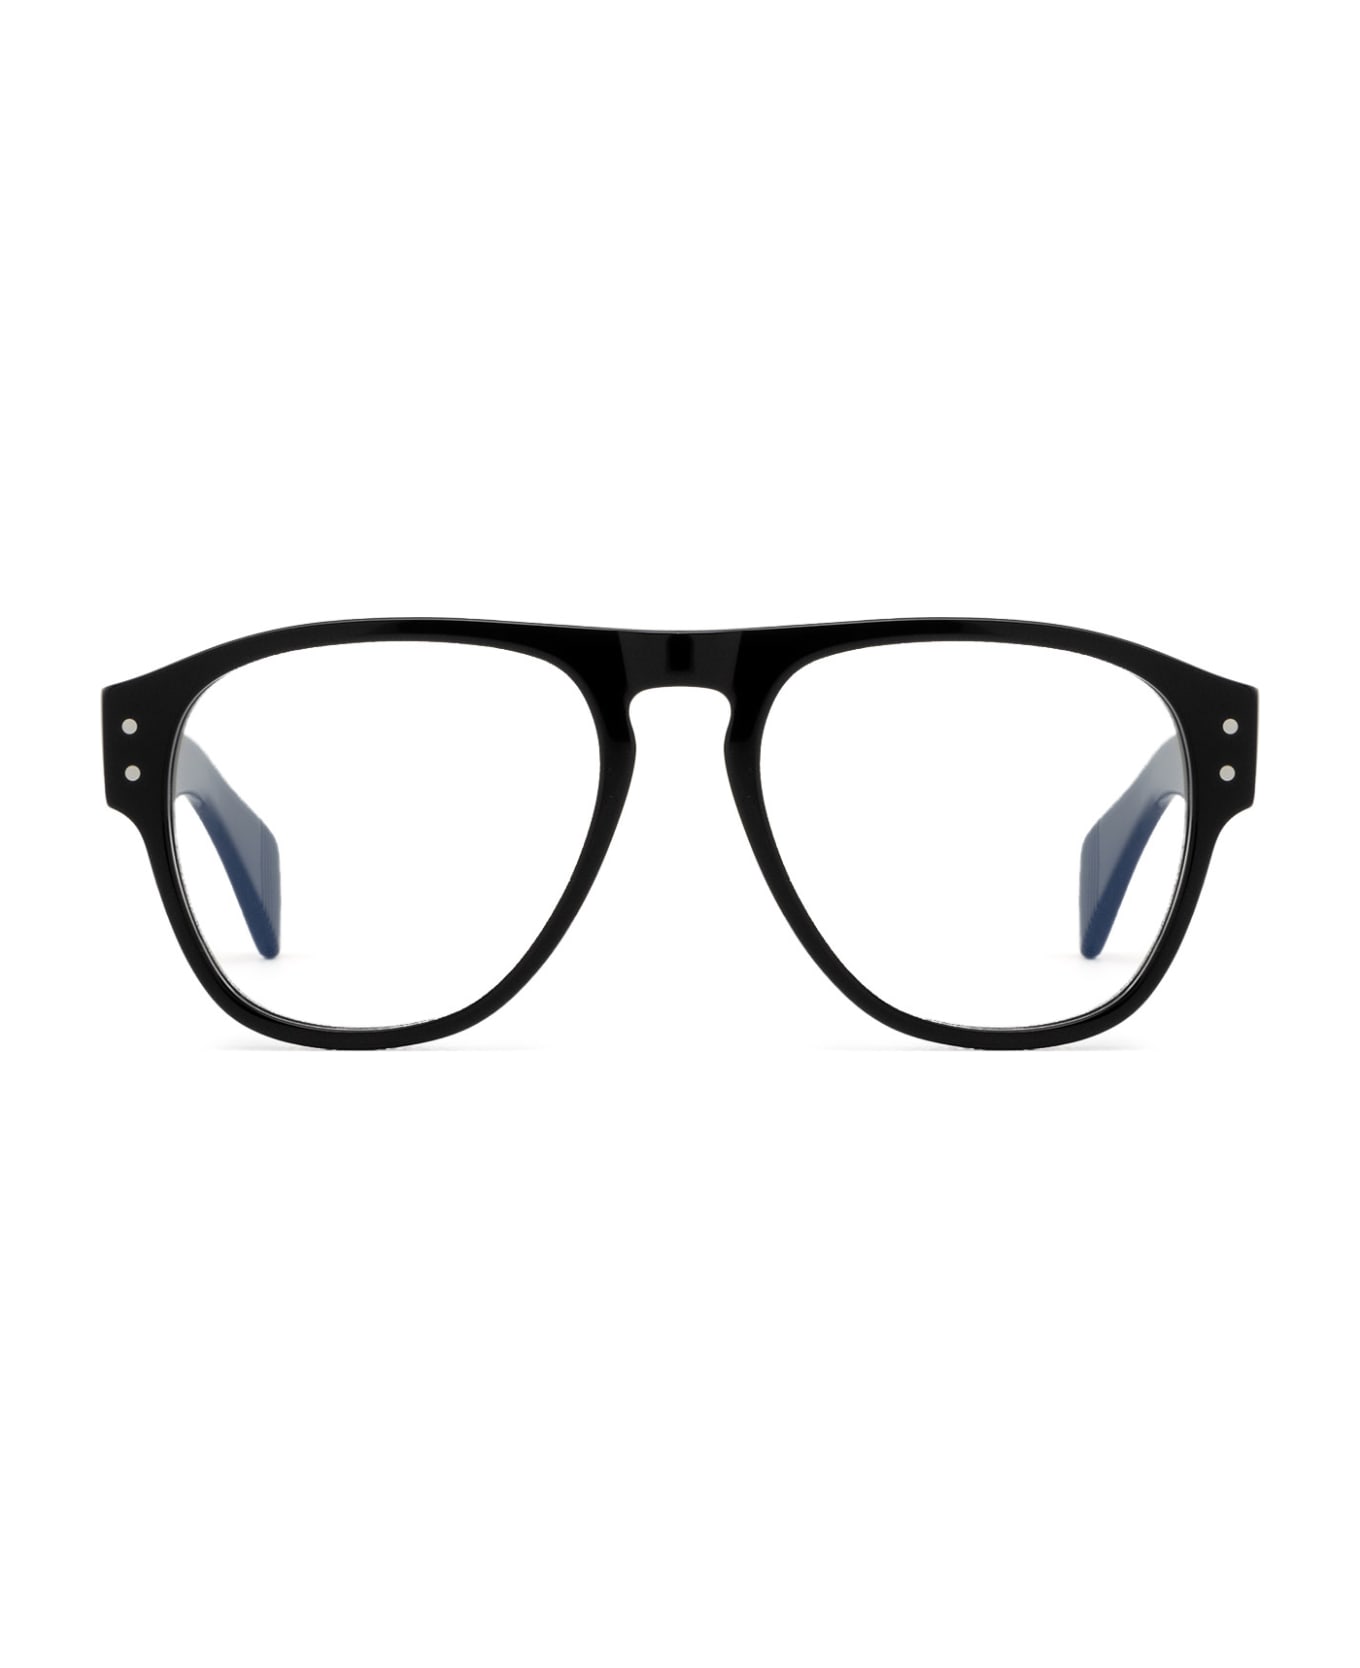 Cubitts Merlin Black Glasses - Black